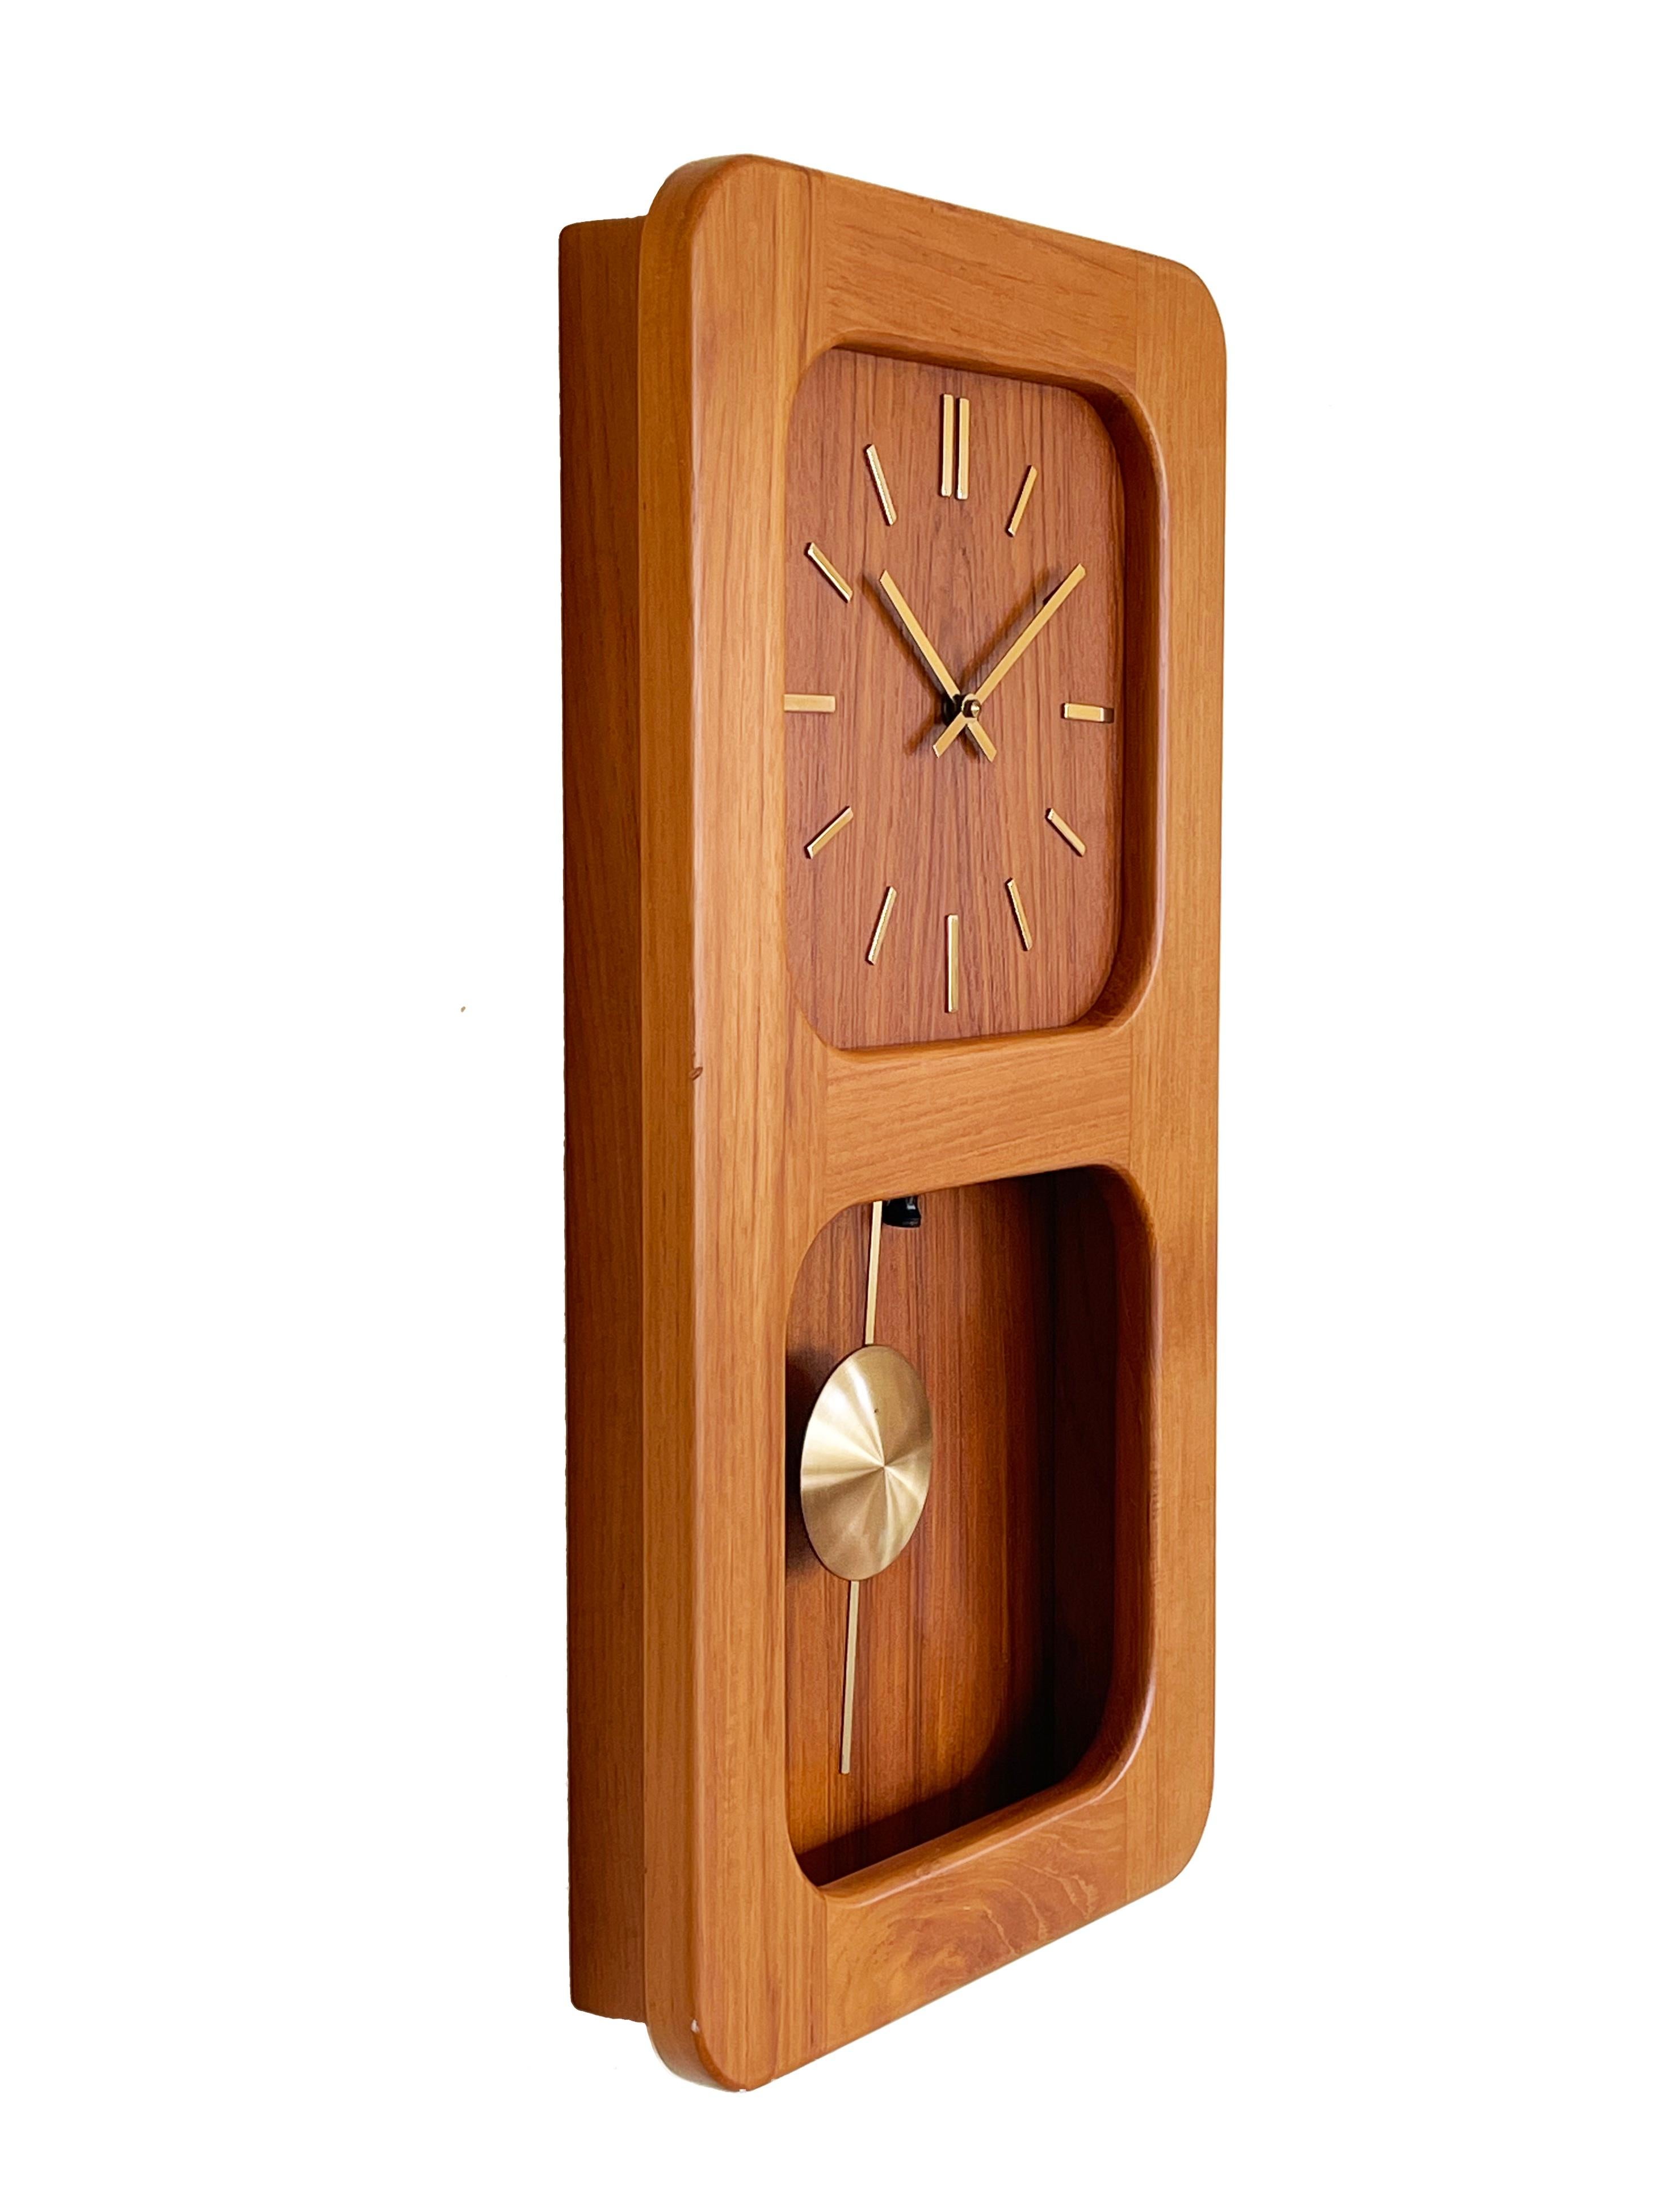 Absolut fantastische Uhr aus der Mitte des Jahrhunderts aus Teakholz mit einem Messingpendel von Westminster Clocks.
Schönes, neu geöltes Gehäuse in typisch dänischem, minimalistischem Design.
Westminster Clocks in Kopenhagen wählte hier das